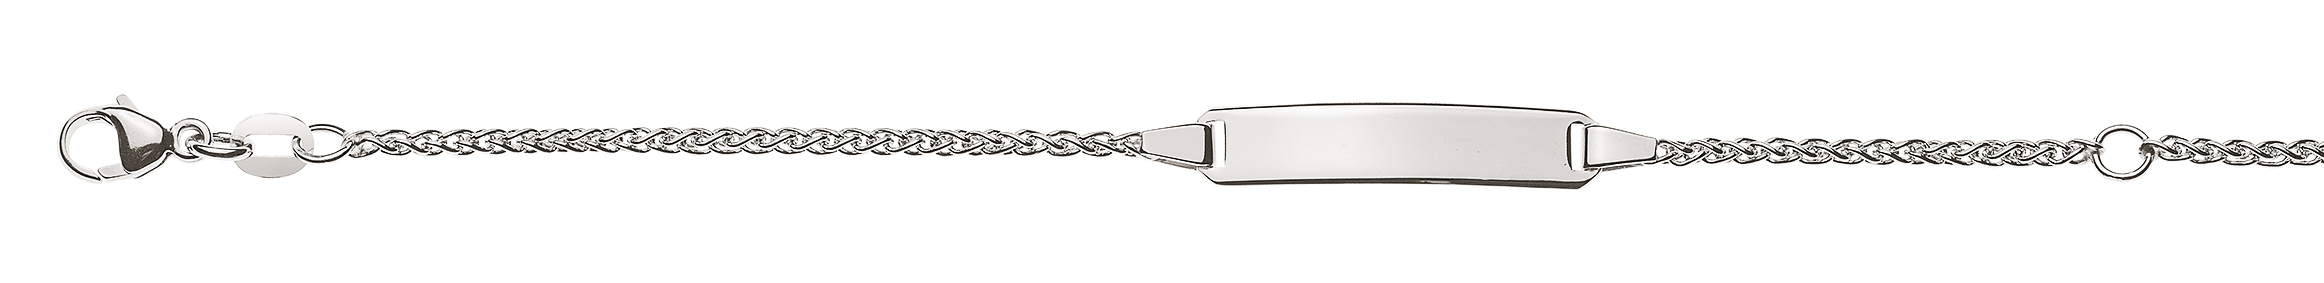 AURONOS Élégance ID-Bracelet 14k Weissgold Zopfkette 18cm